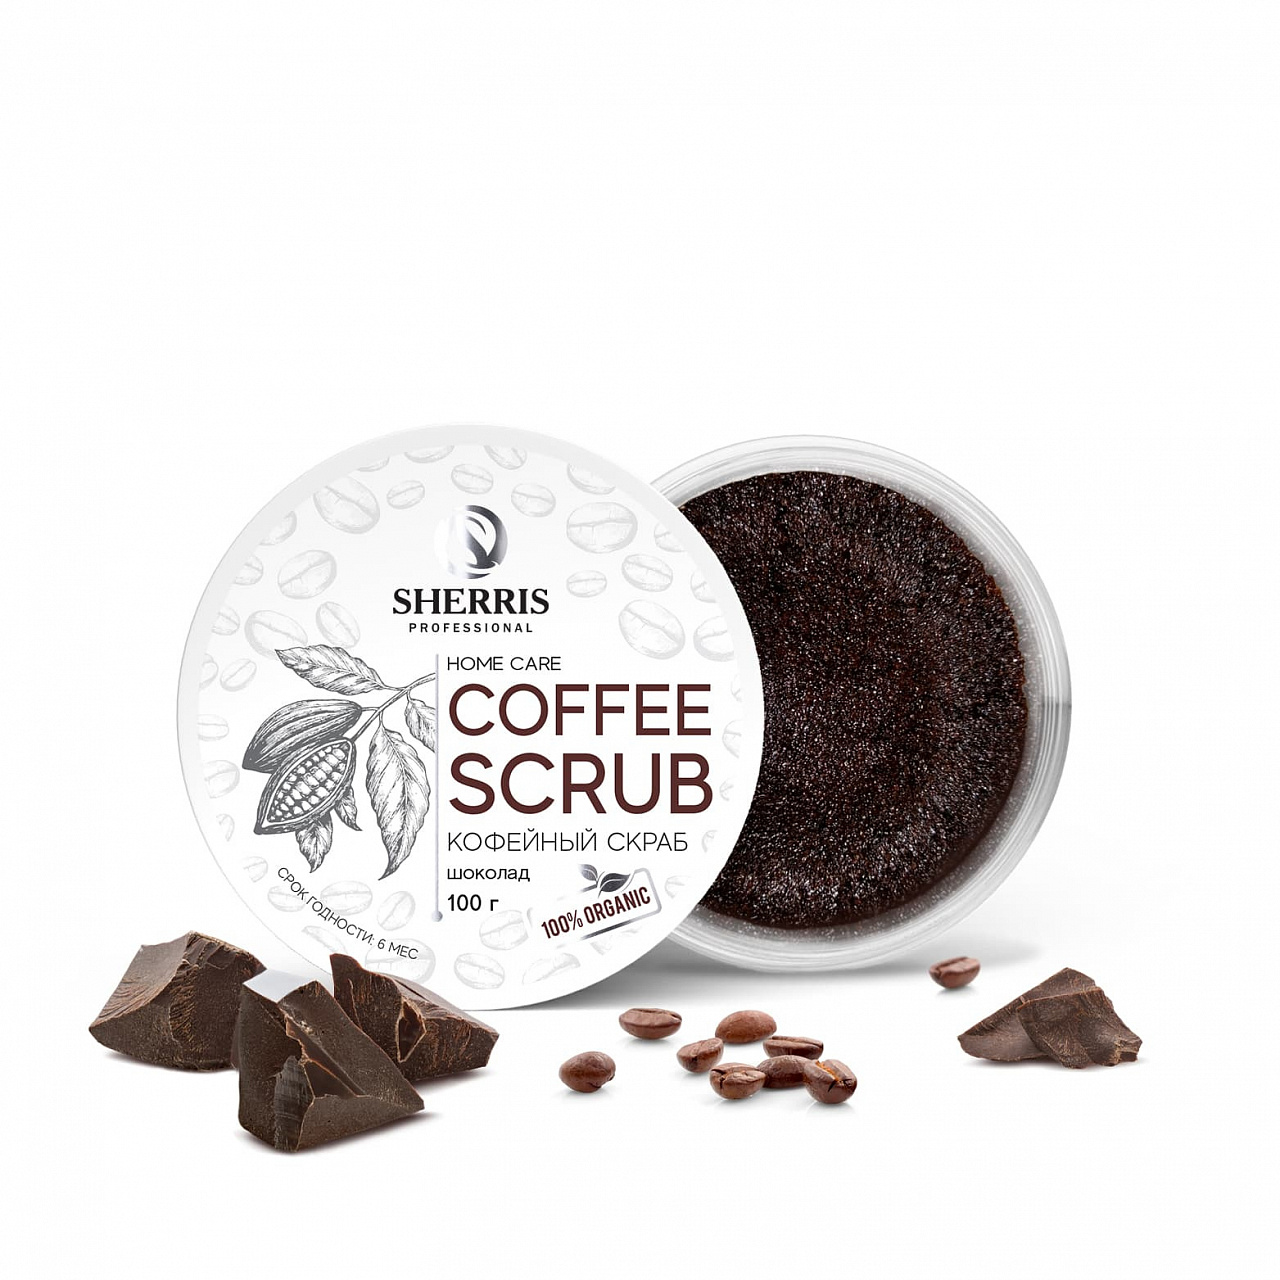 Кофейный скраб для тела SHERRIS шоколад, 100 гр paw factory сахарно солевой антицеллюлитный скраб для тела кофе и шоколад 250 0